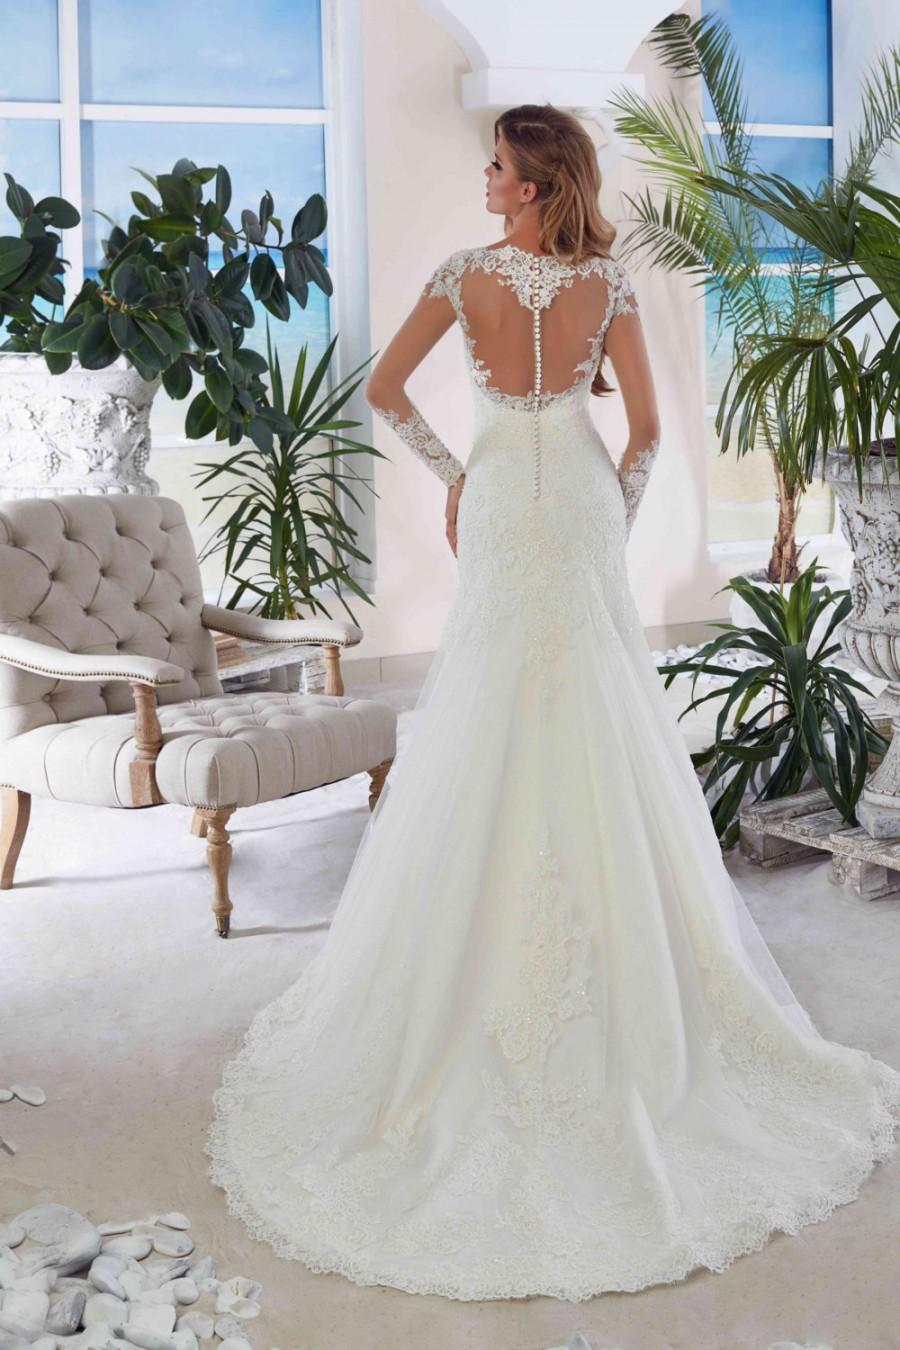 Wedding - Bridal Lace Wedding Dress - Adina Wedding Stunning Lace Dress - Long Wedding Dress with Train - Cathedral  Elegant Wedding Dress